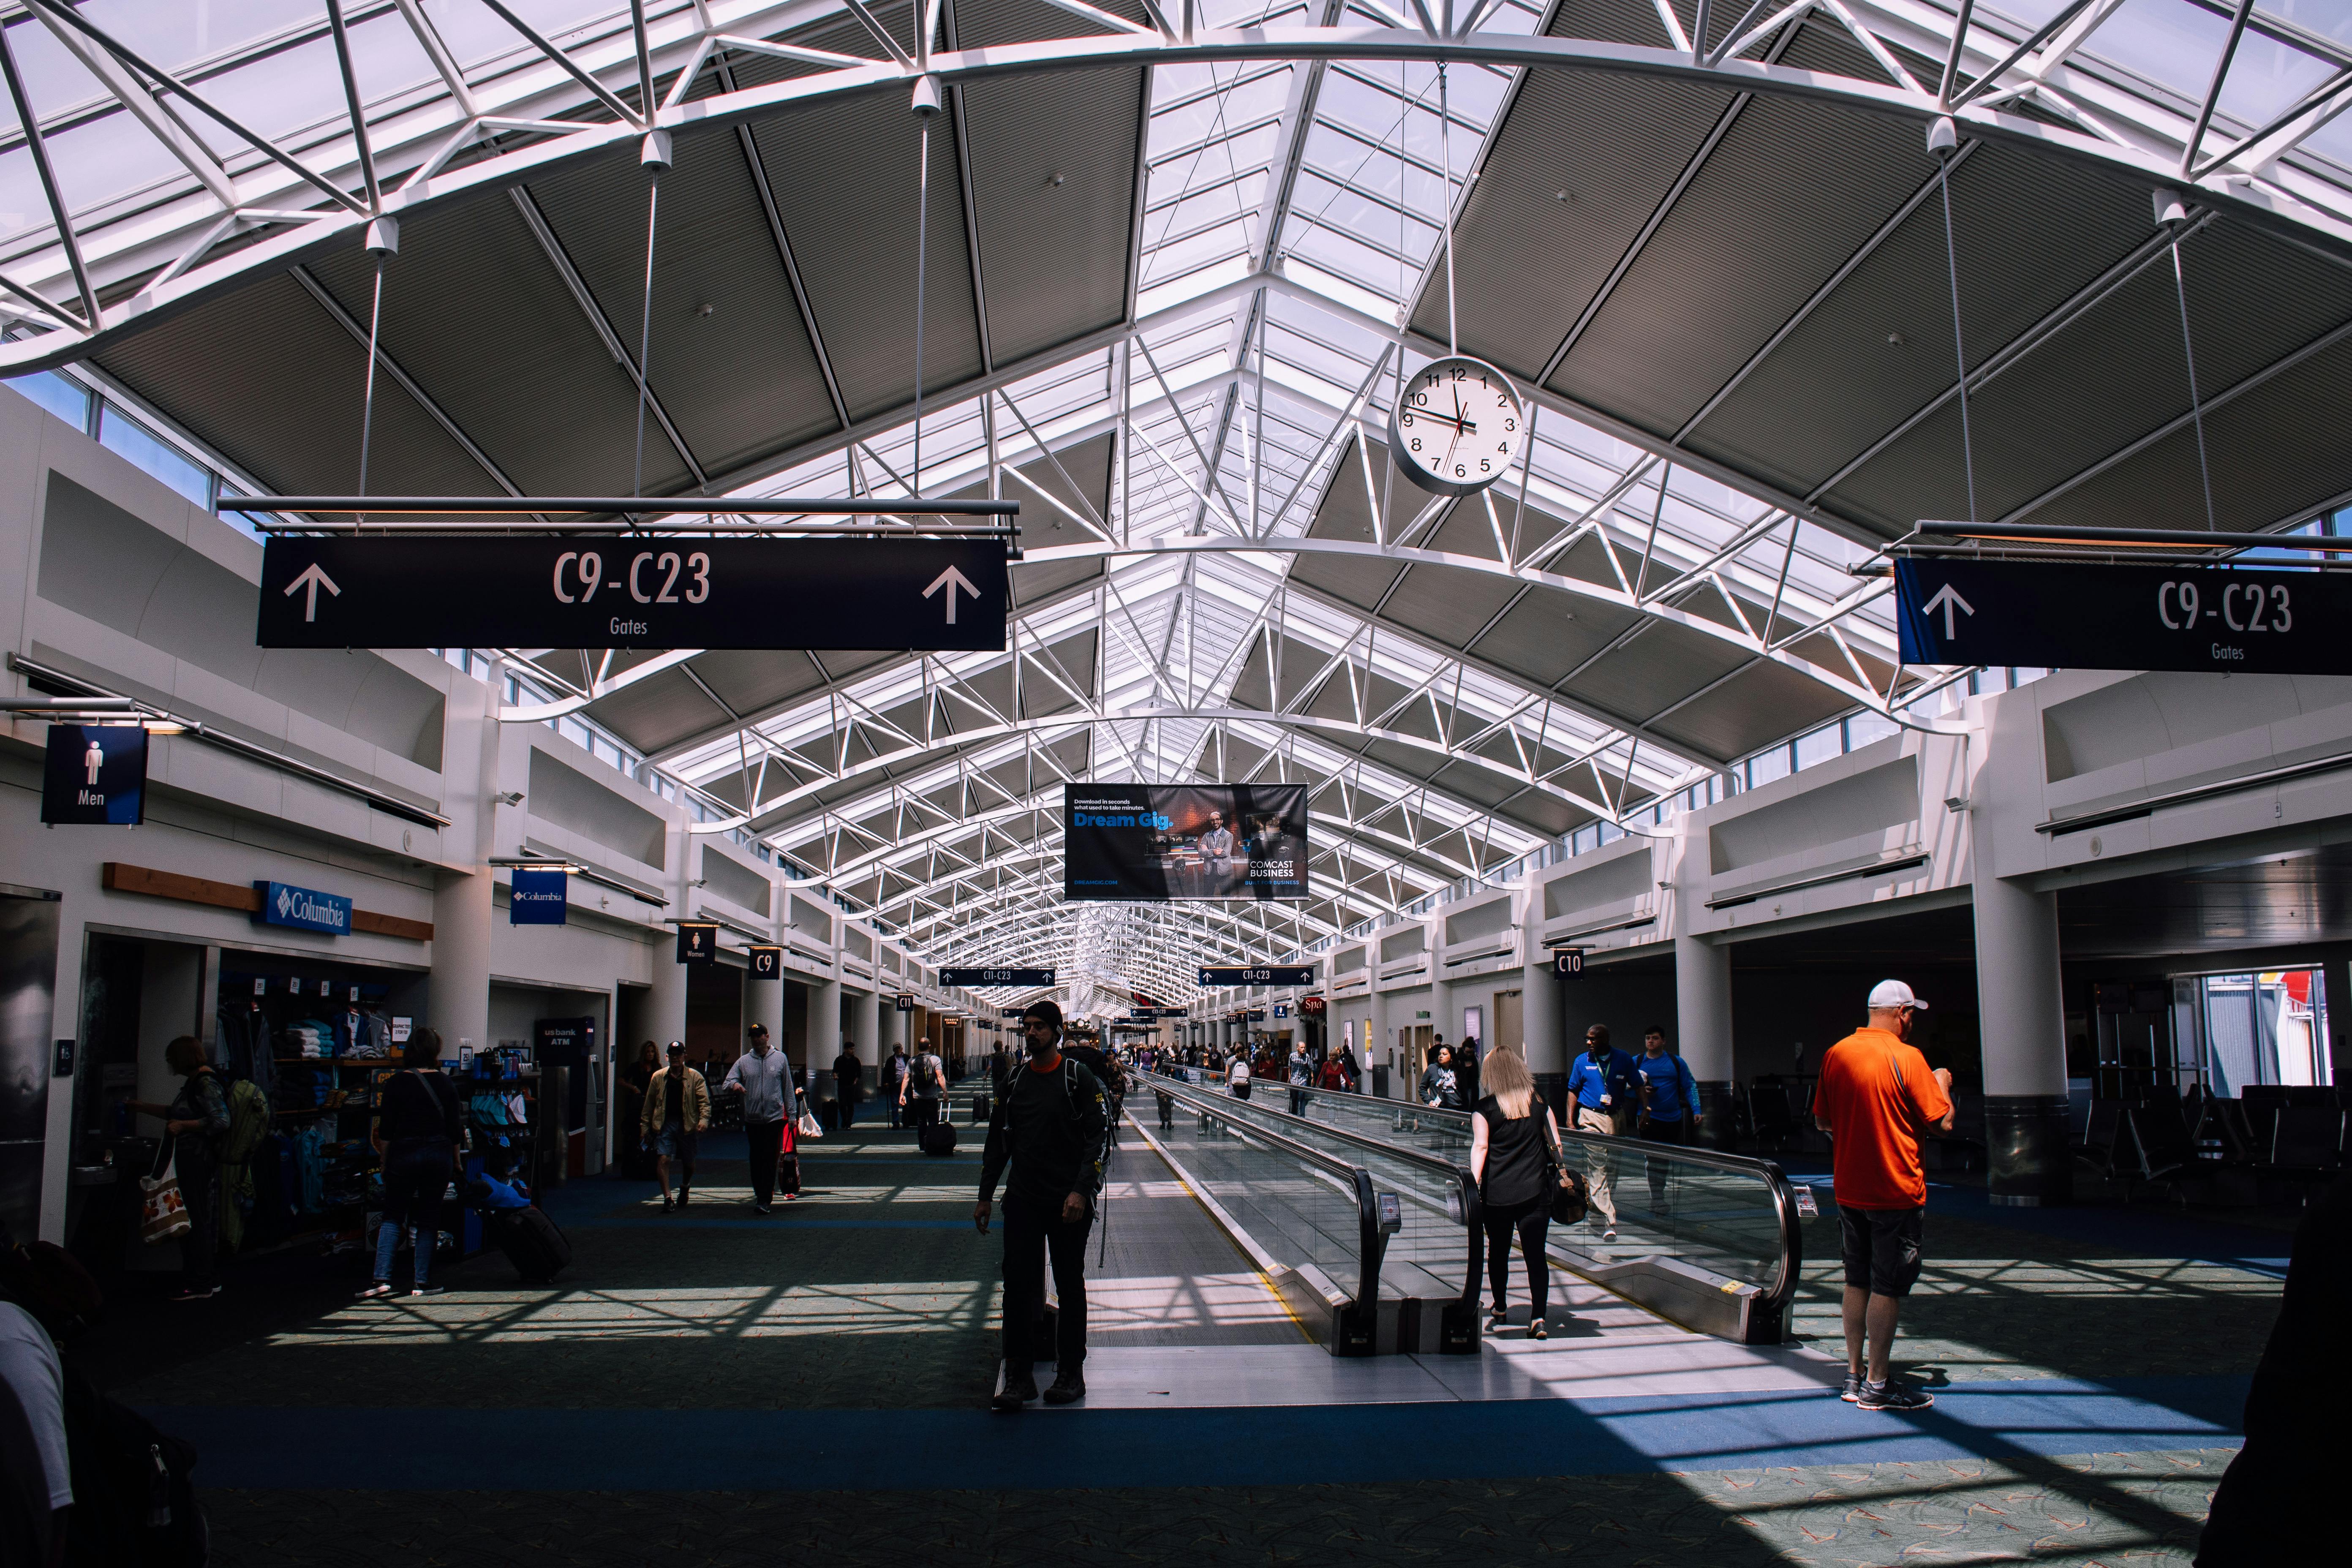 200+ Engaging Airport Photos · Pexels · Free Stock Photos